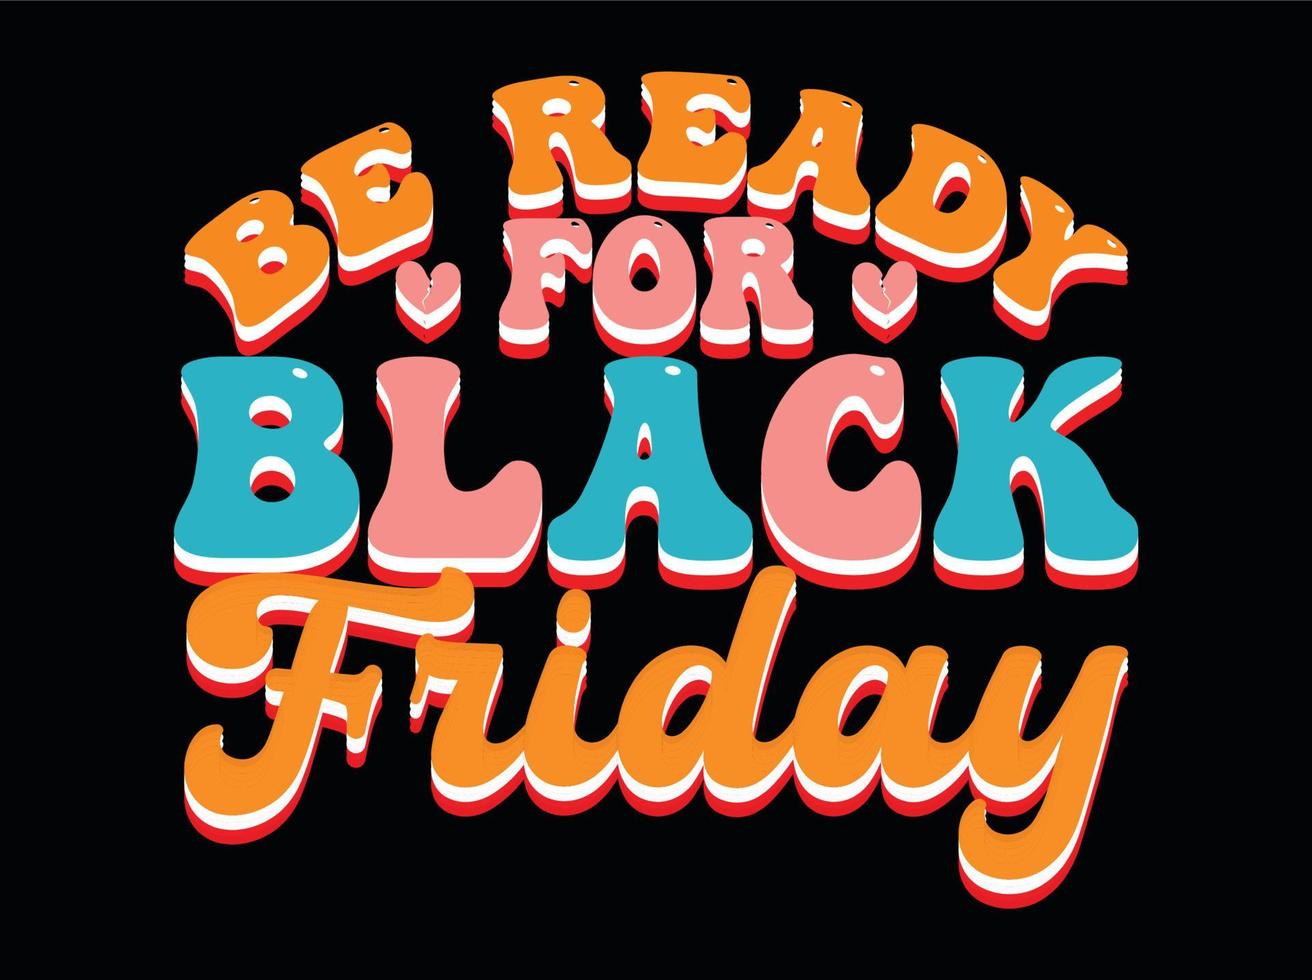 schwarzer Freitag-Svg-Design, Retro-T-Shirt-Design, schwarzer Freitag-T-Shirt-Design, schwarzer Freitag-Handwerk, schwarzer Freitag-Textentwurf vektor